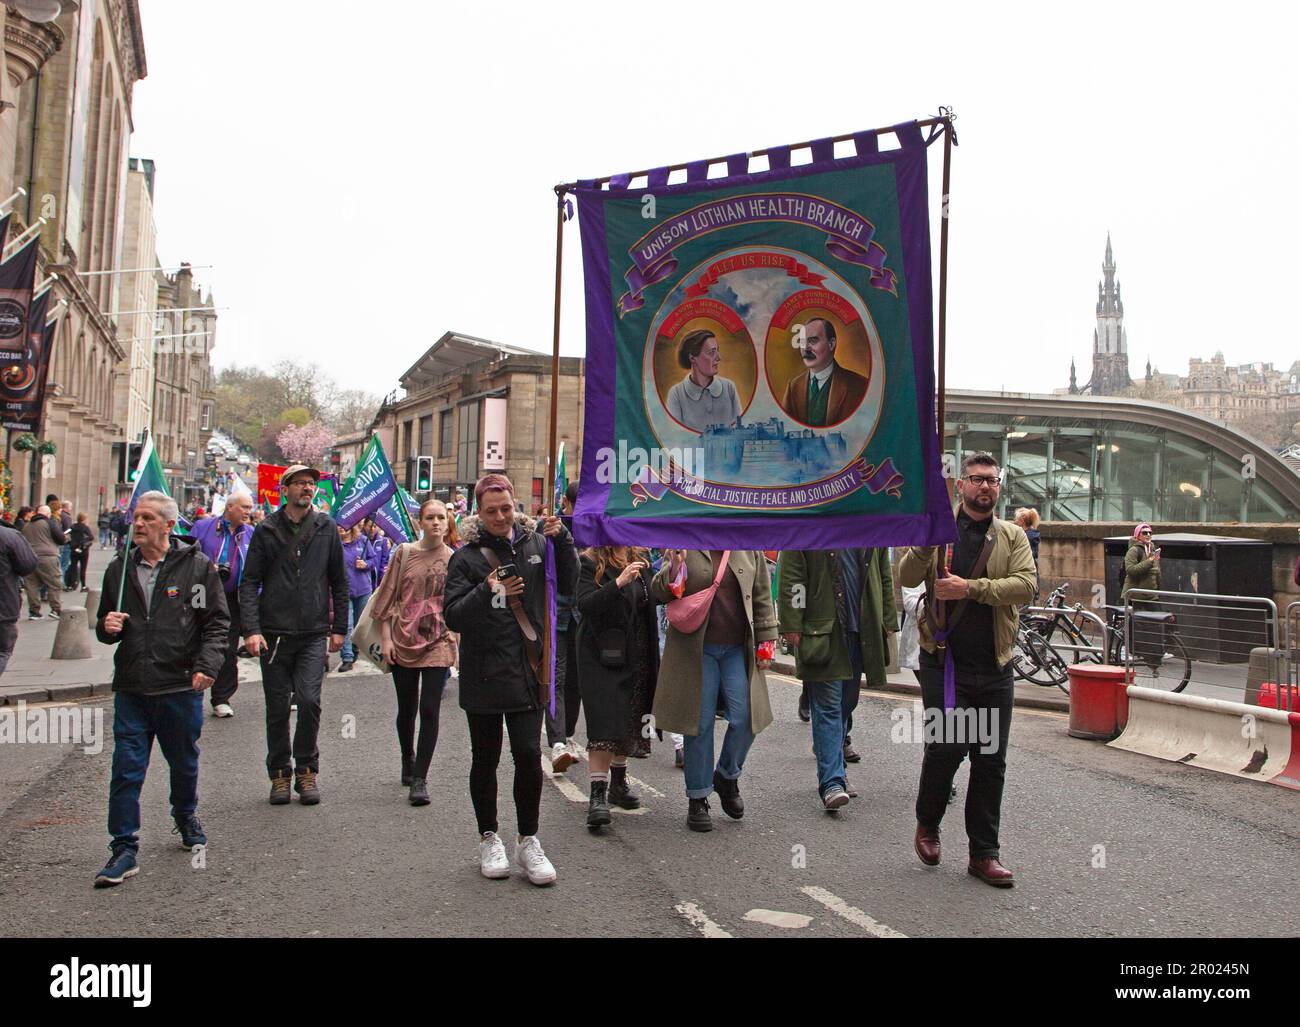 Centro di Edimburgo, Scozia, Regno Unito. 6 maggio 2023. Il Rally del giorno di maggio, vari gruppi che esprimono messaggi diversi mentre marciano attraverso il centro della città. Credit: Arch White/alamy live news. Foto Stock